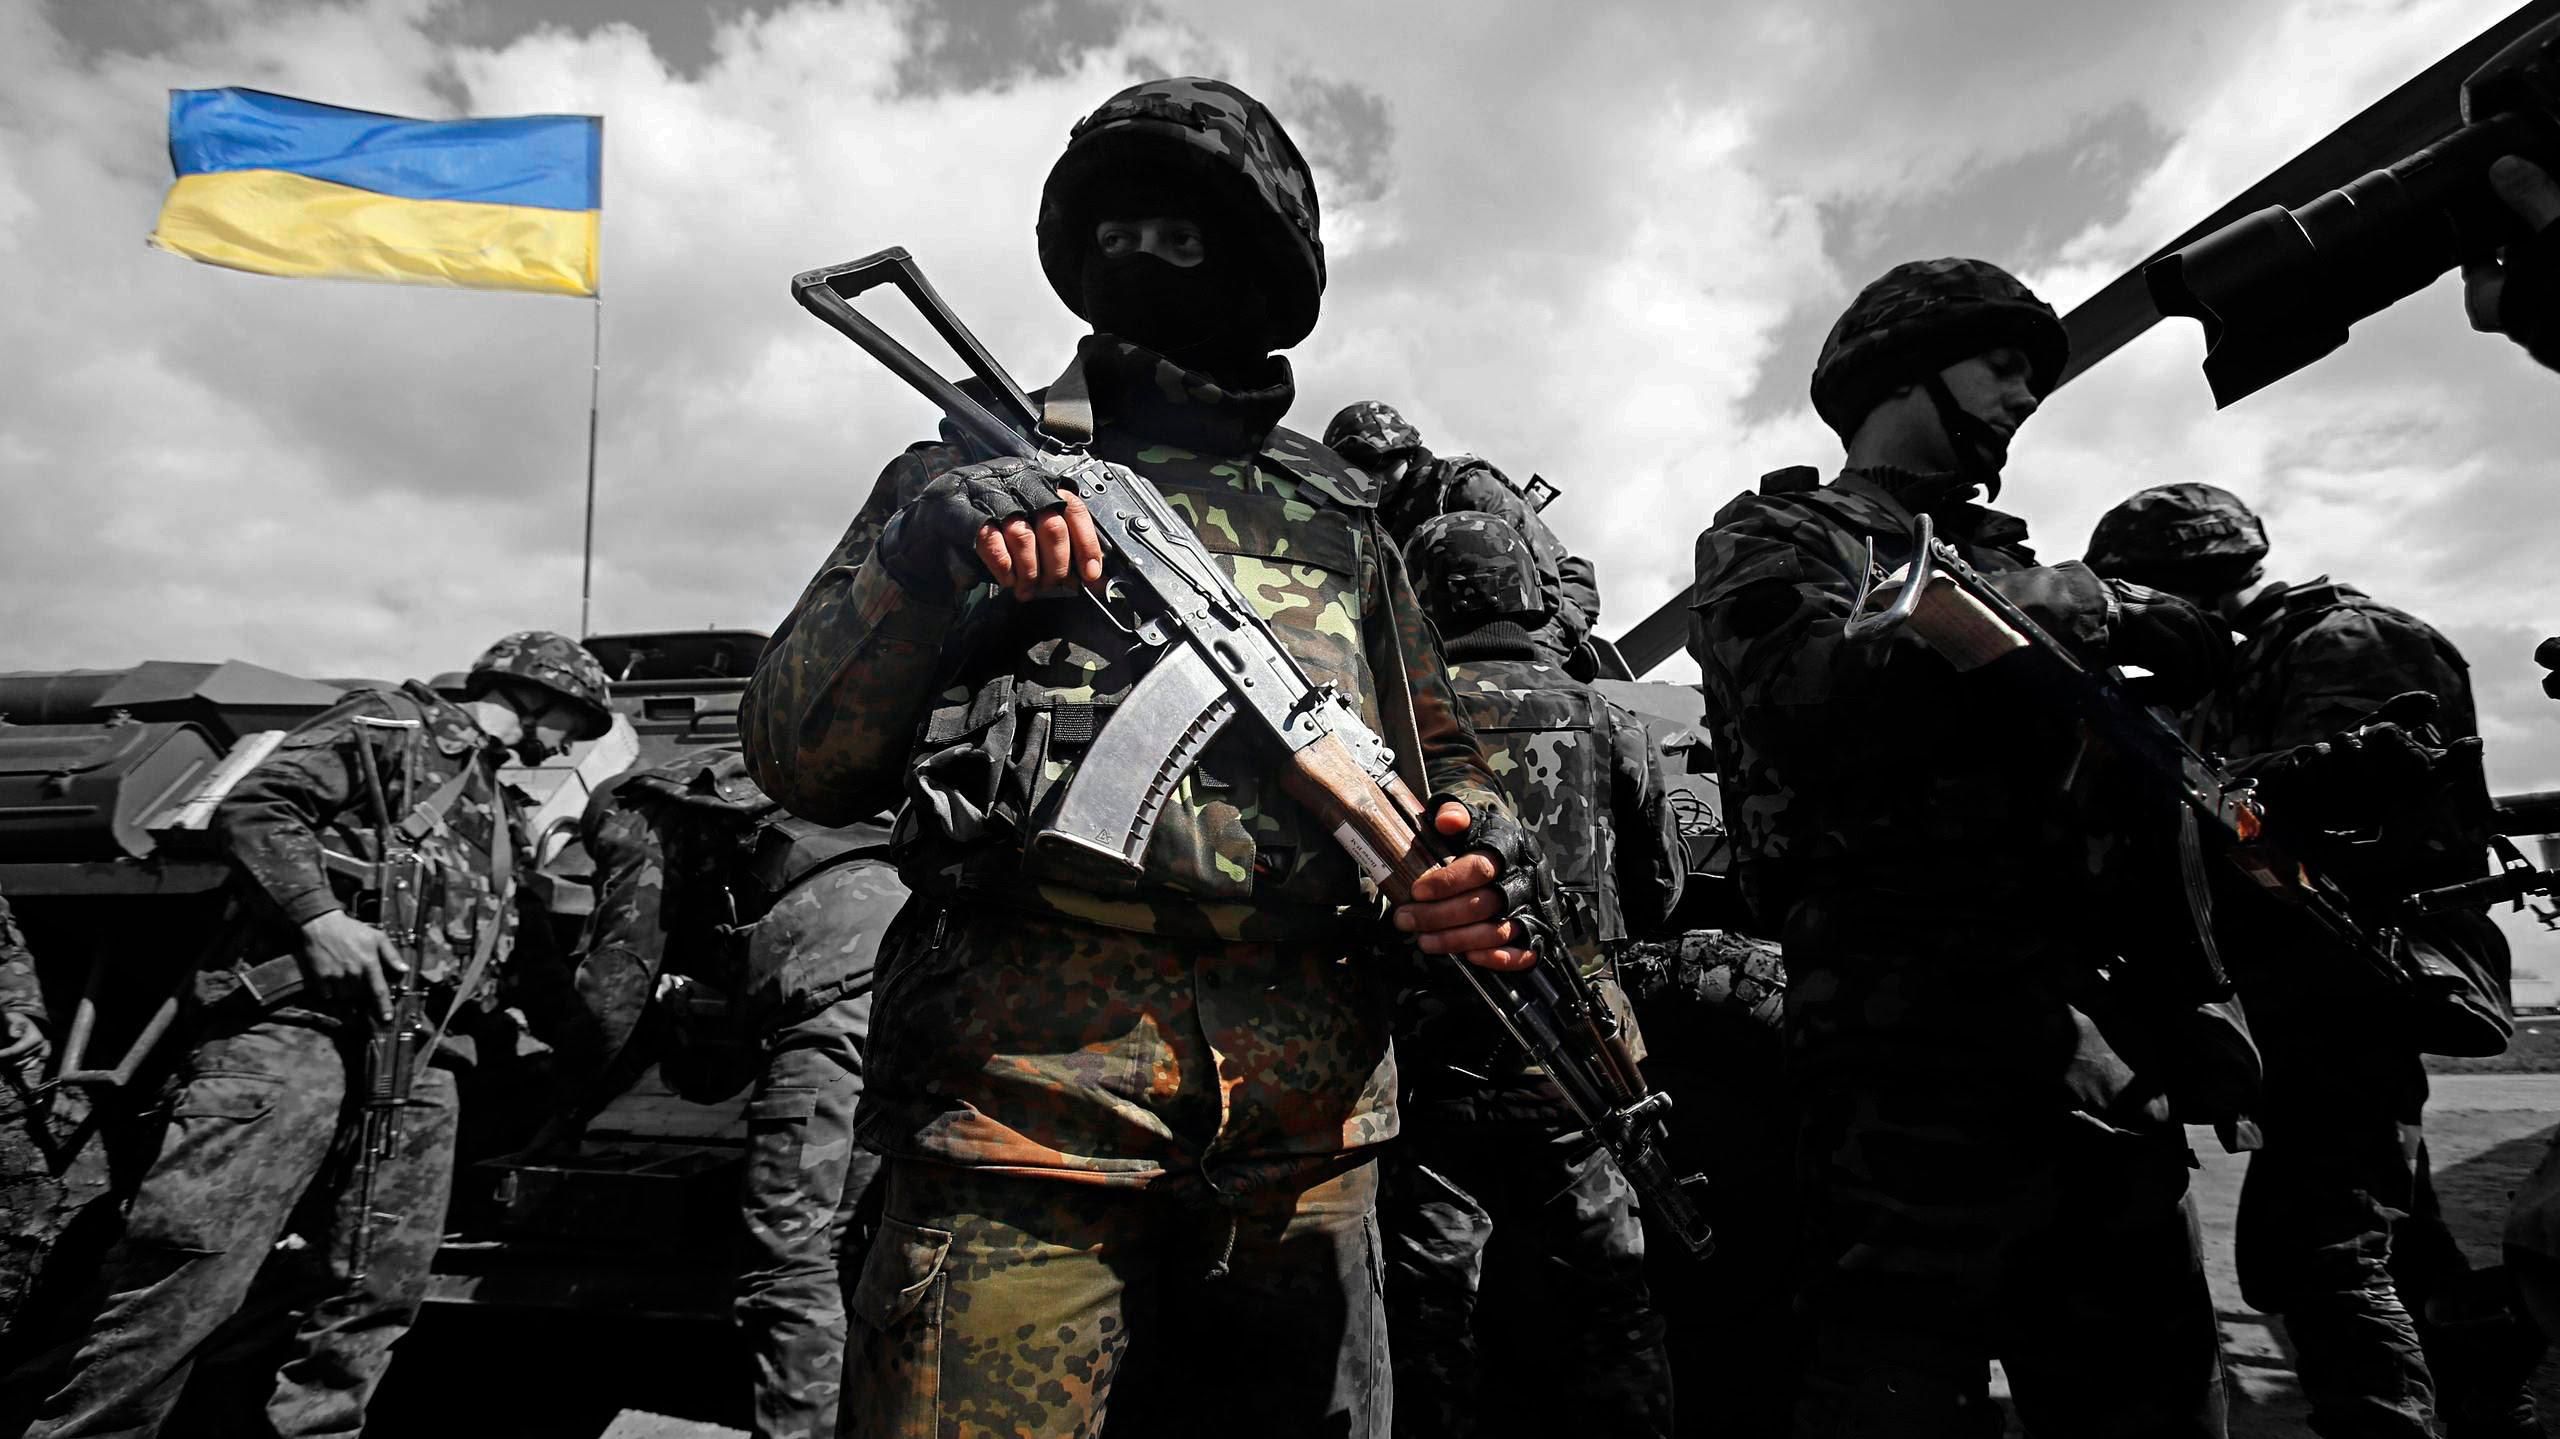 Сотня обстрелов за сутки: на Донбассе среди военных есть раненые